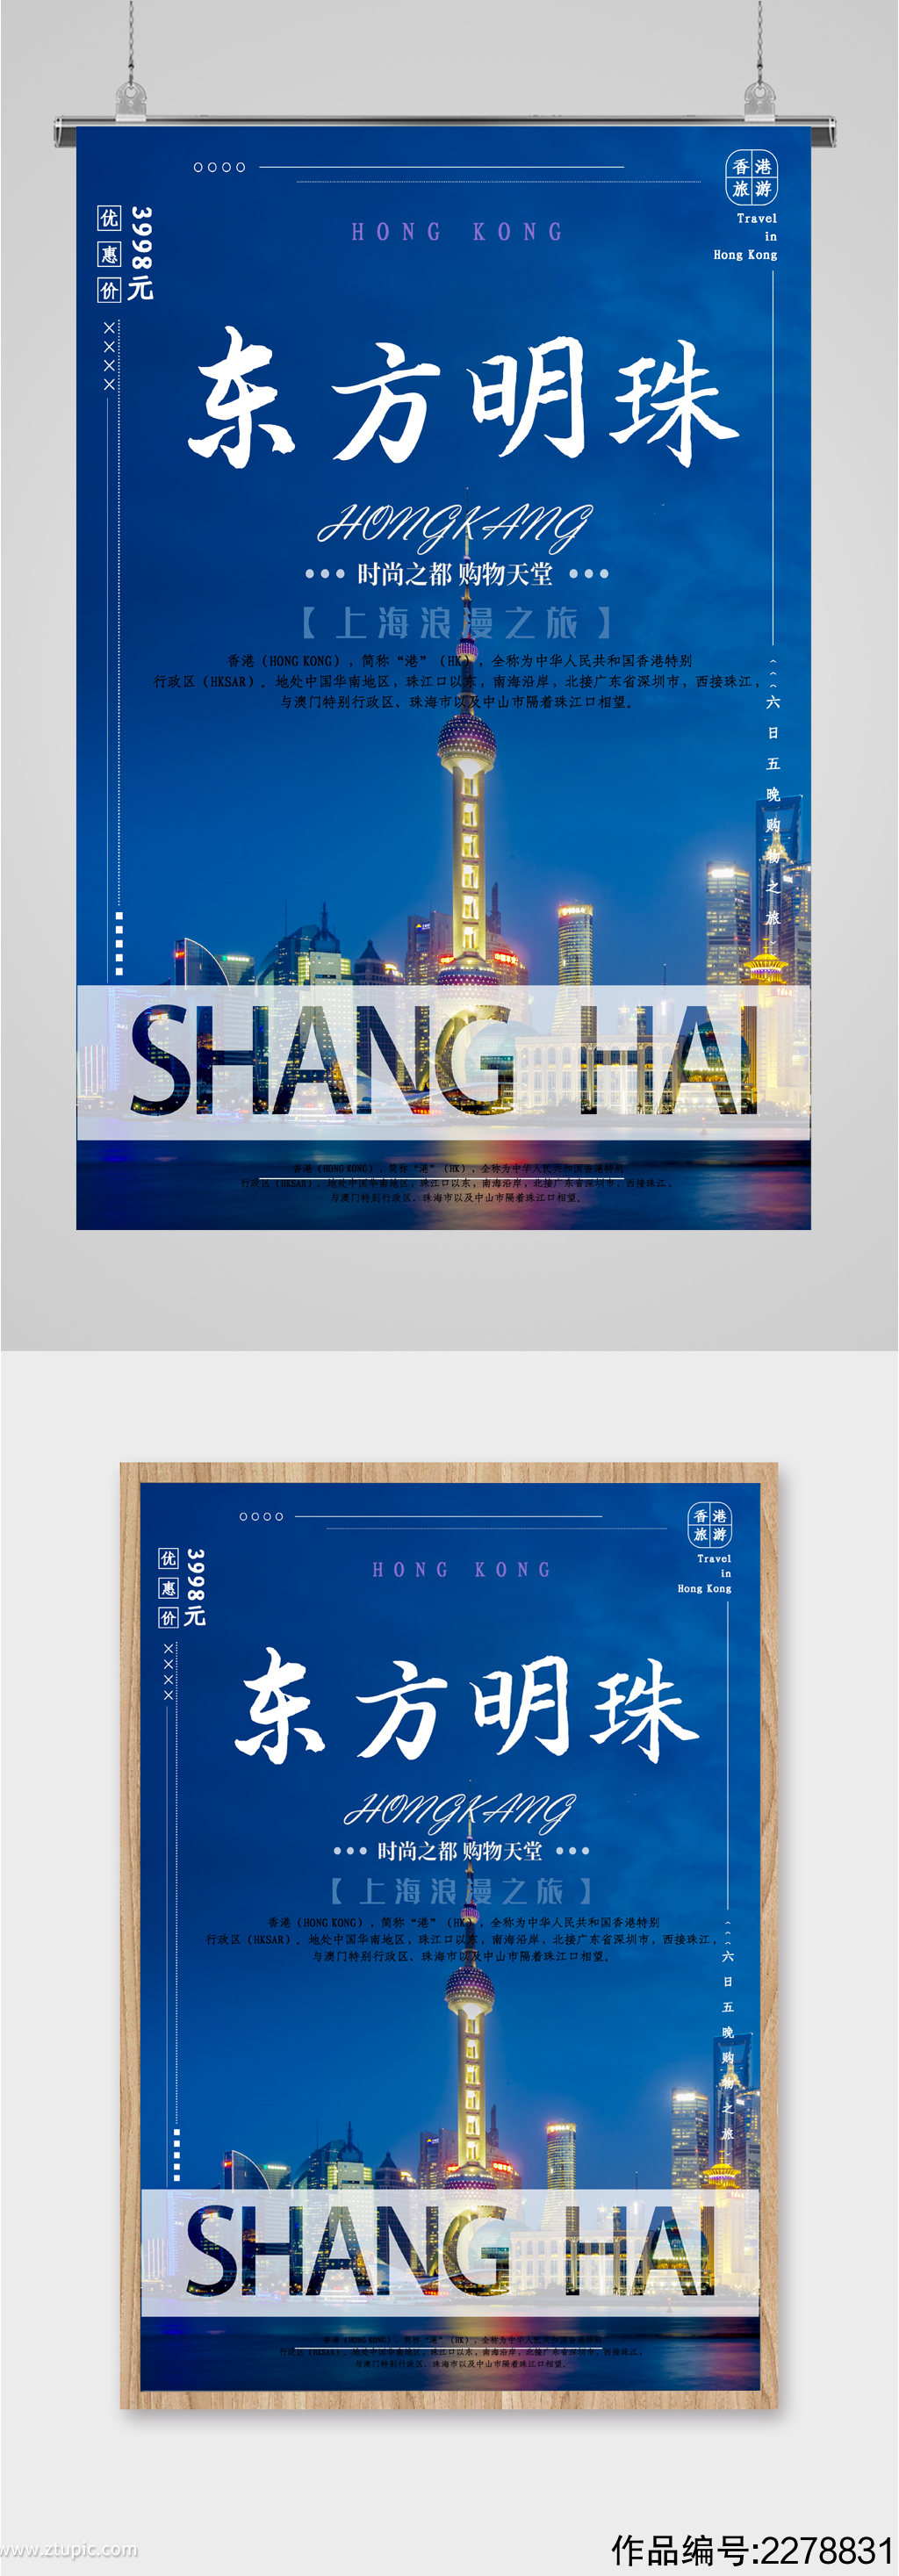 东方明珠上海之旅海报